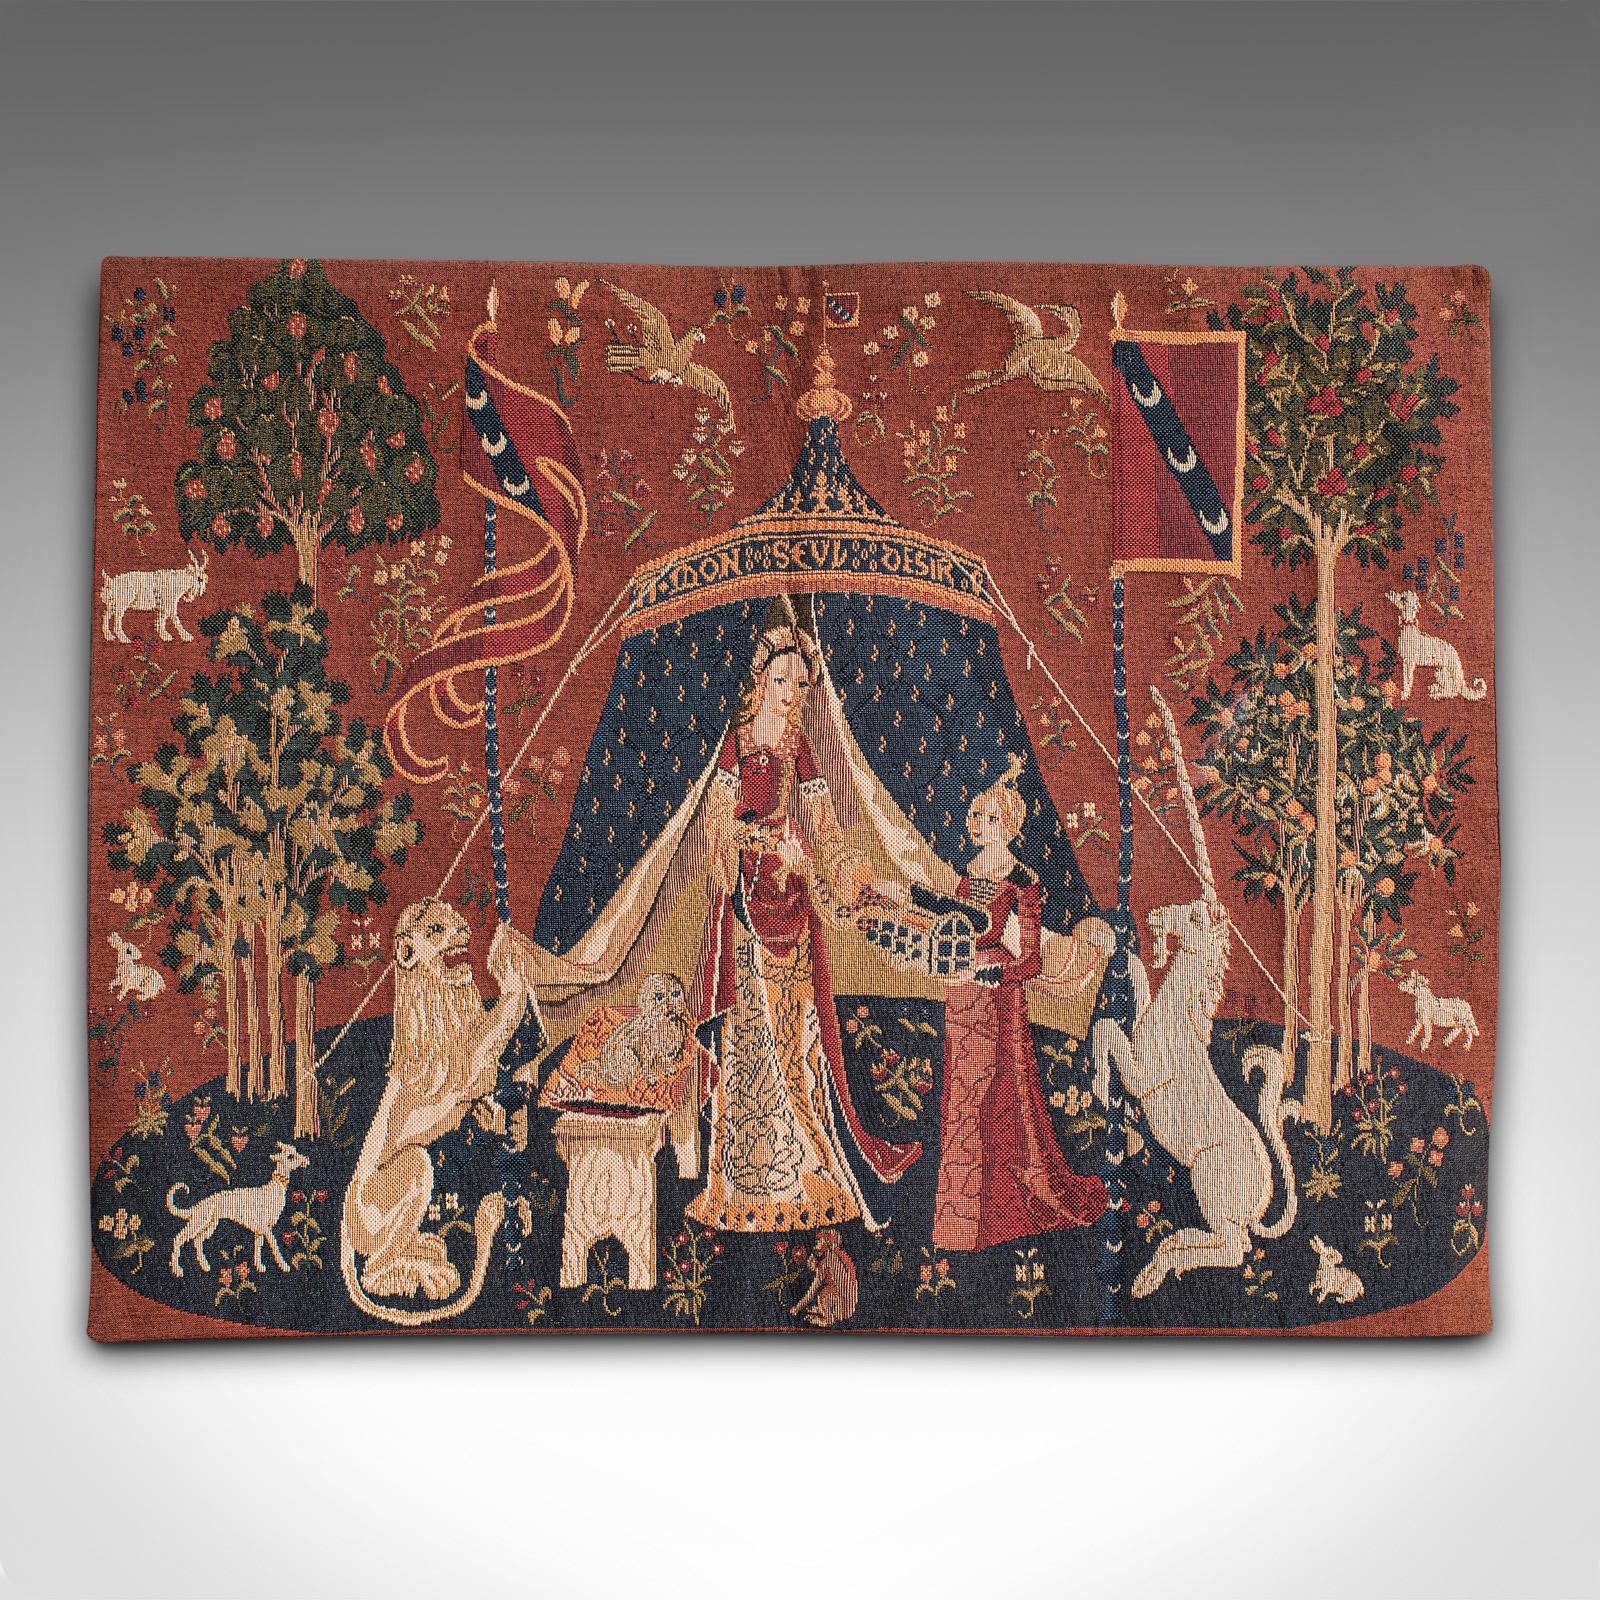 Il s'agit d'une petite tapisserie vintage. Une scène française à l'aiguille représentant La Dame et la Licorne, datant de la fin du 20e siècle, vers 1980.

De proportions compactes, cette tapisserie est une recréation de qualité de la série de